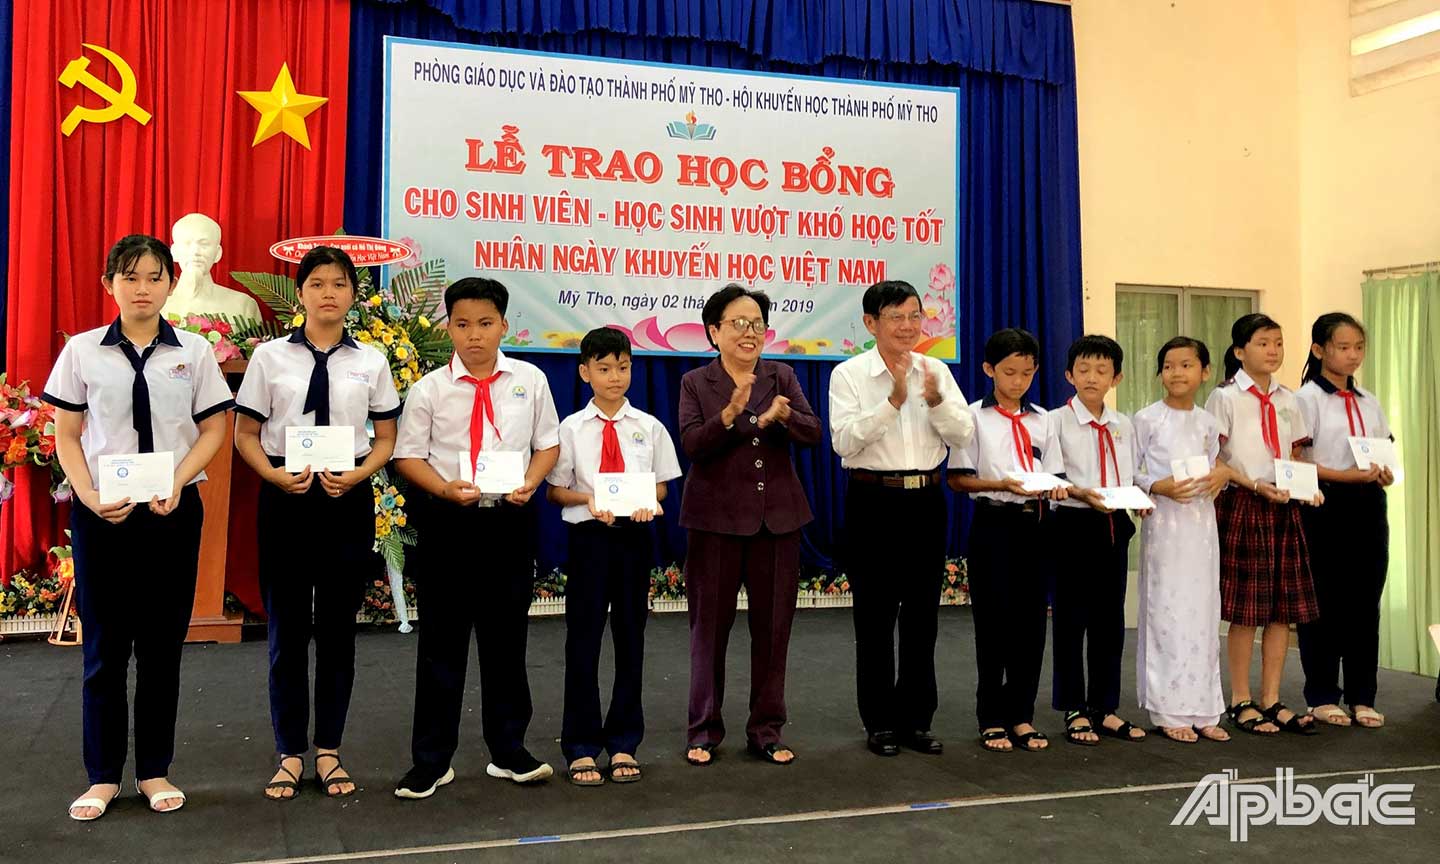 Cô Hồ Thị Đông trao học bổng cho sinh viên - học sinh vượt khó học tốt nhân Ngày Khuyến học Việt Nam. 